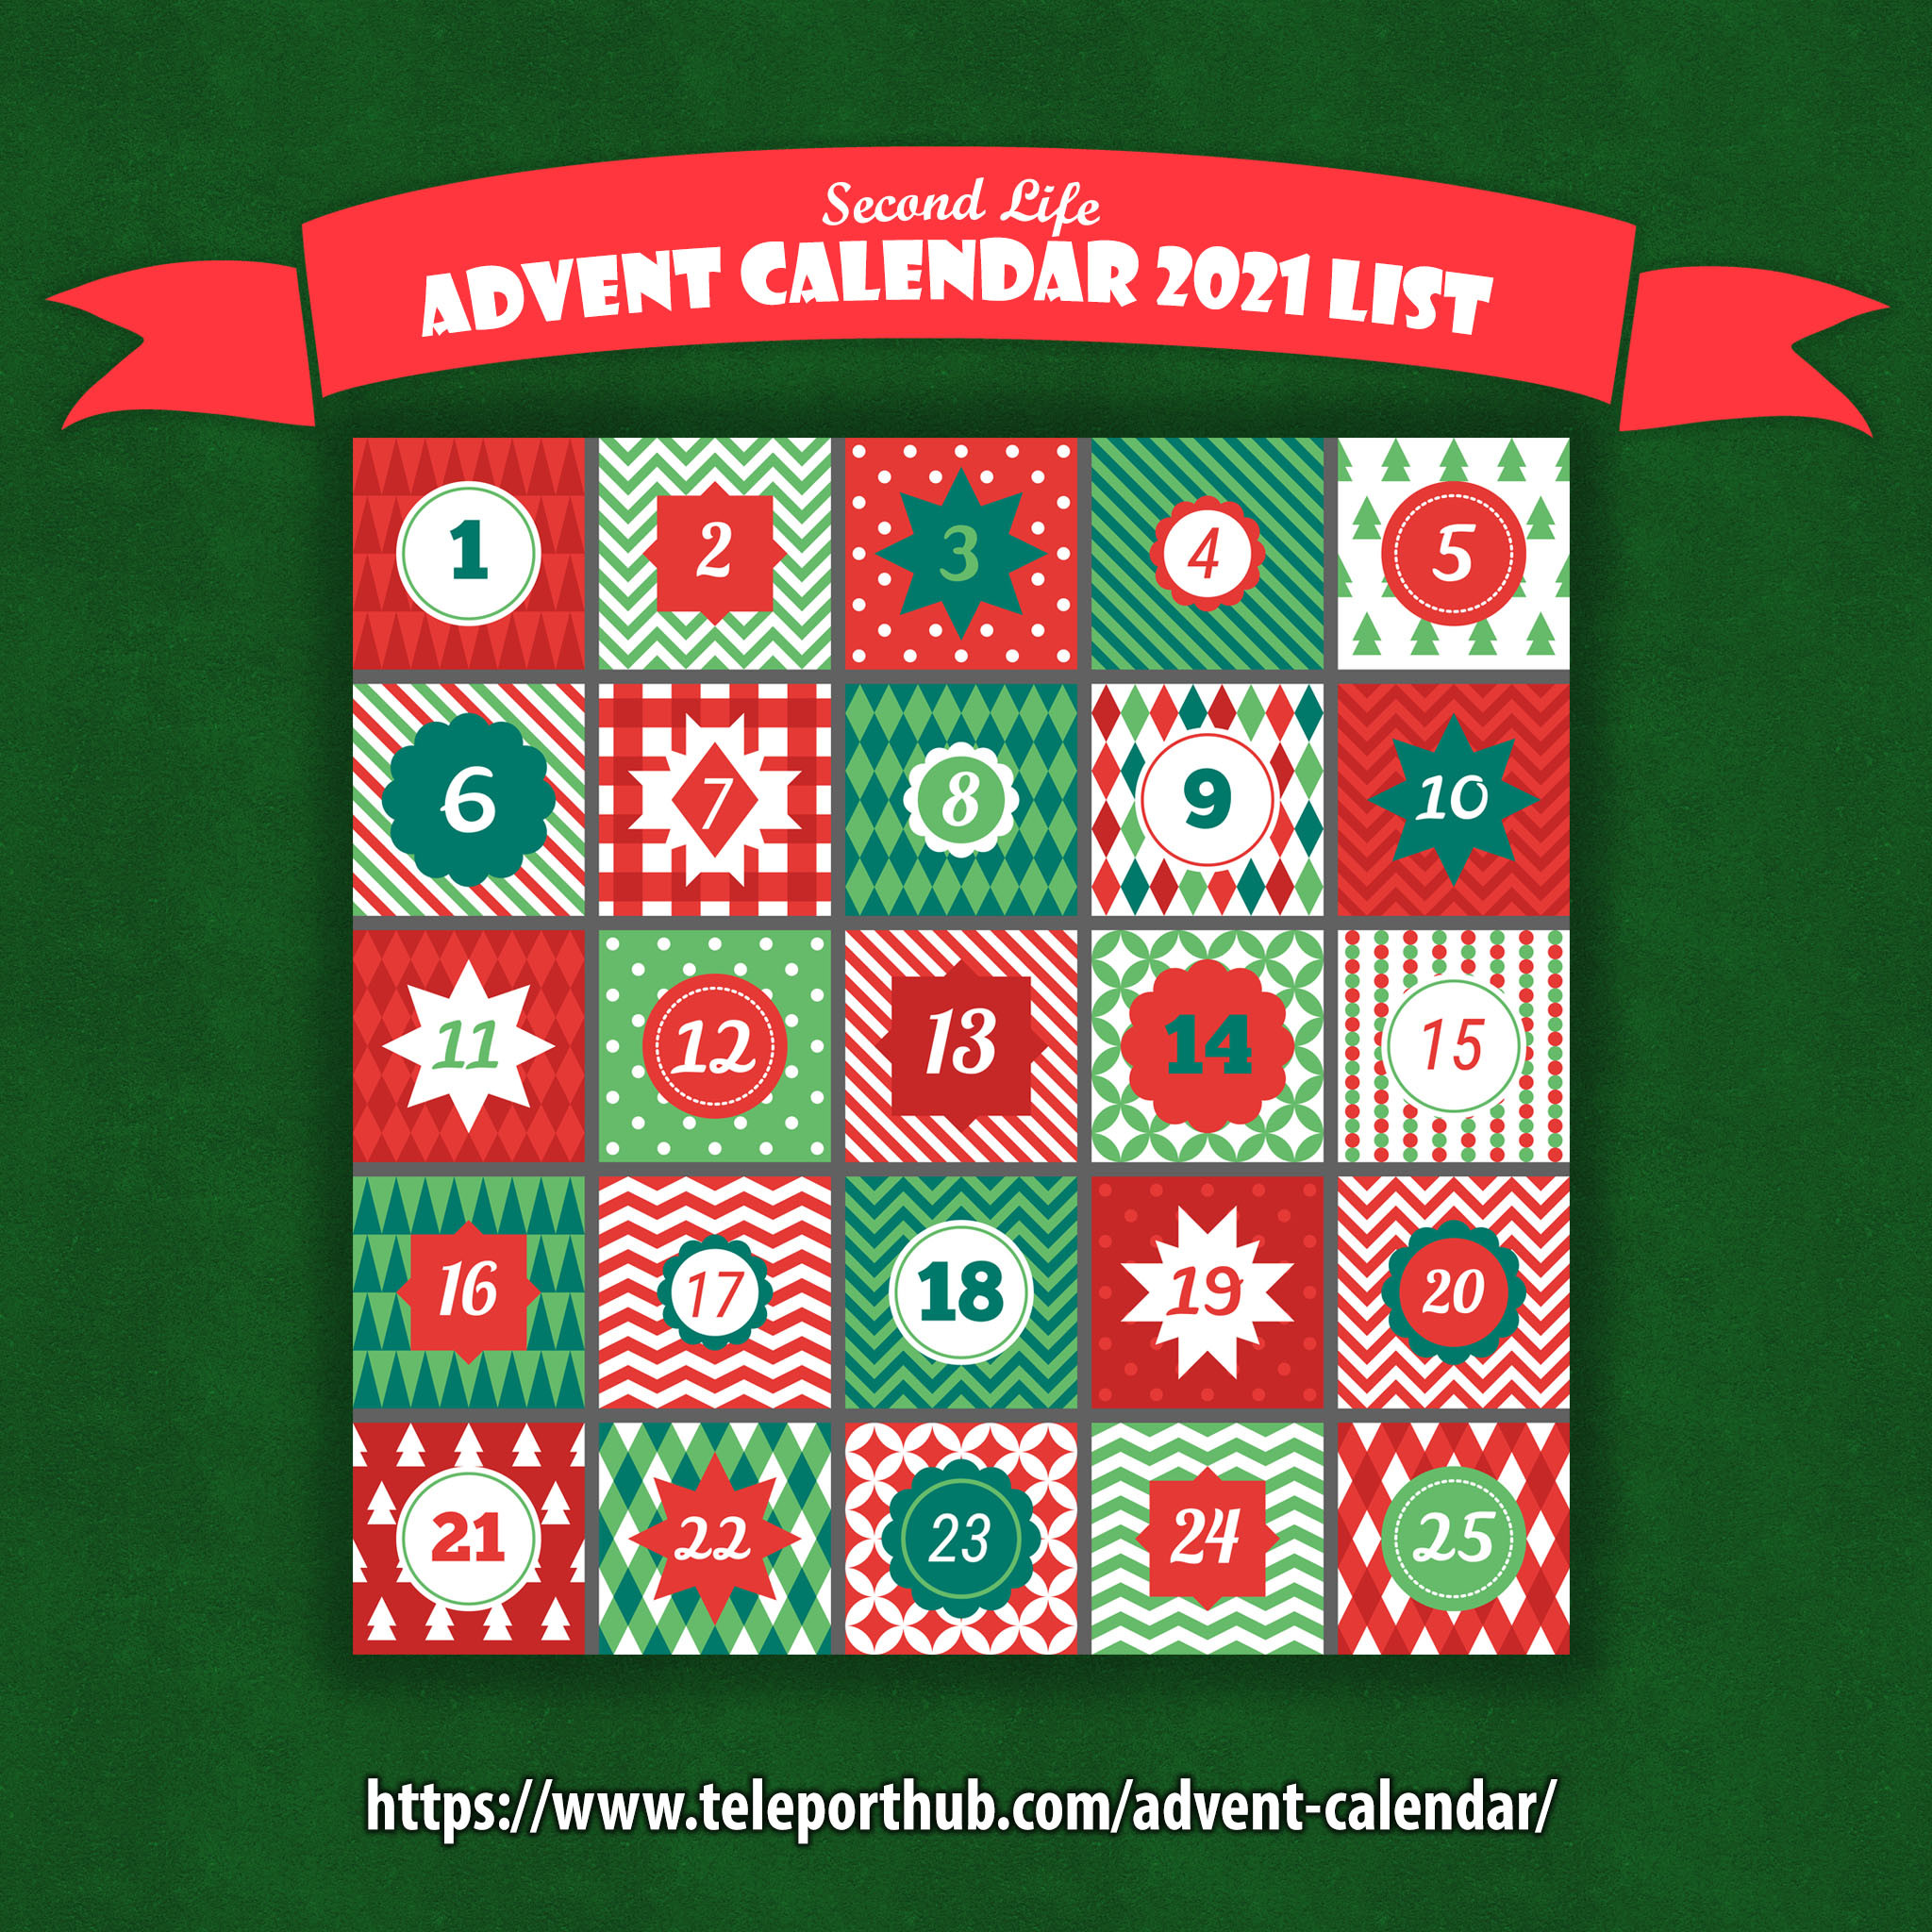 Advent Calendar 2021 - Teleport Hub - teleporthub.com